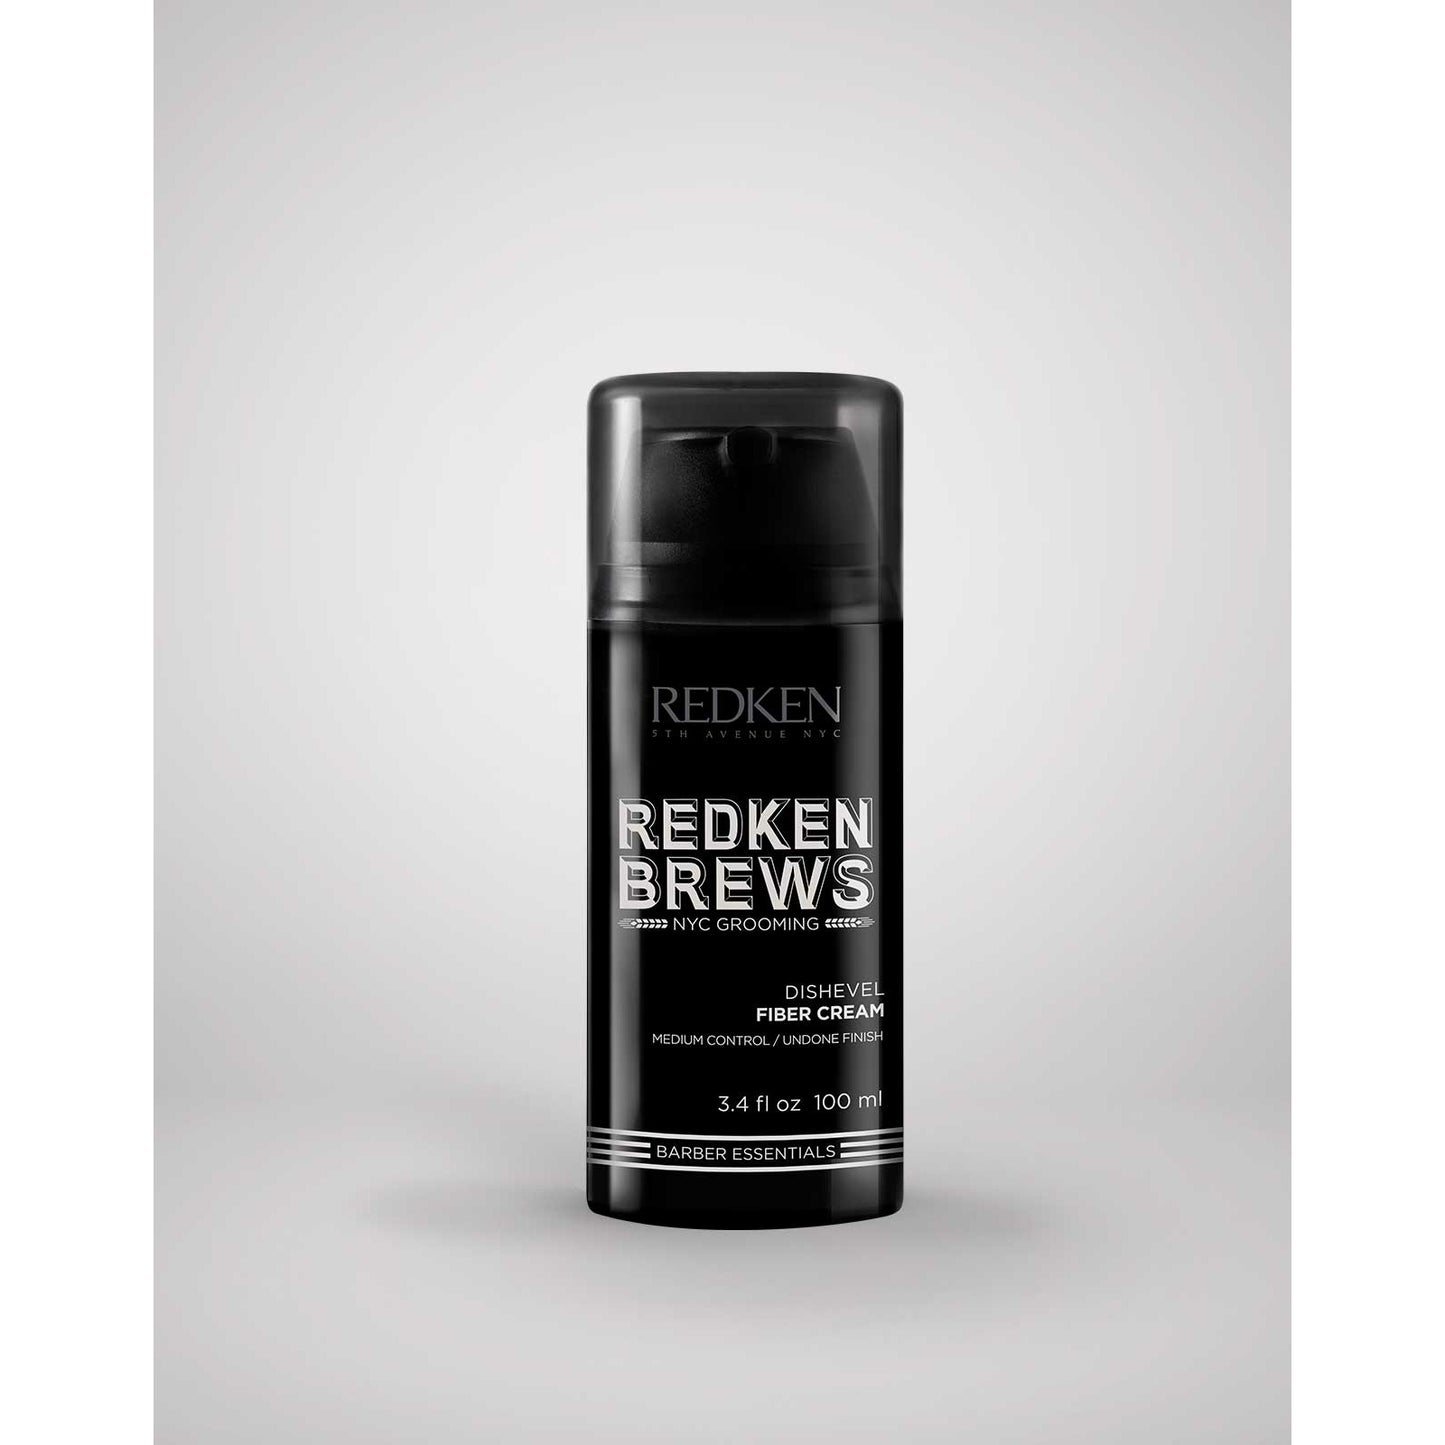 Redken Brews Dishevel Fiber Cream for Men